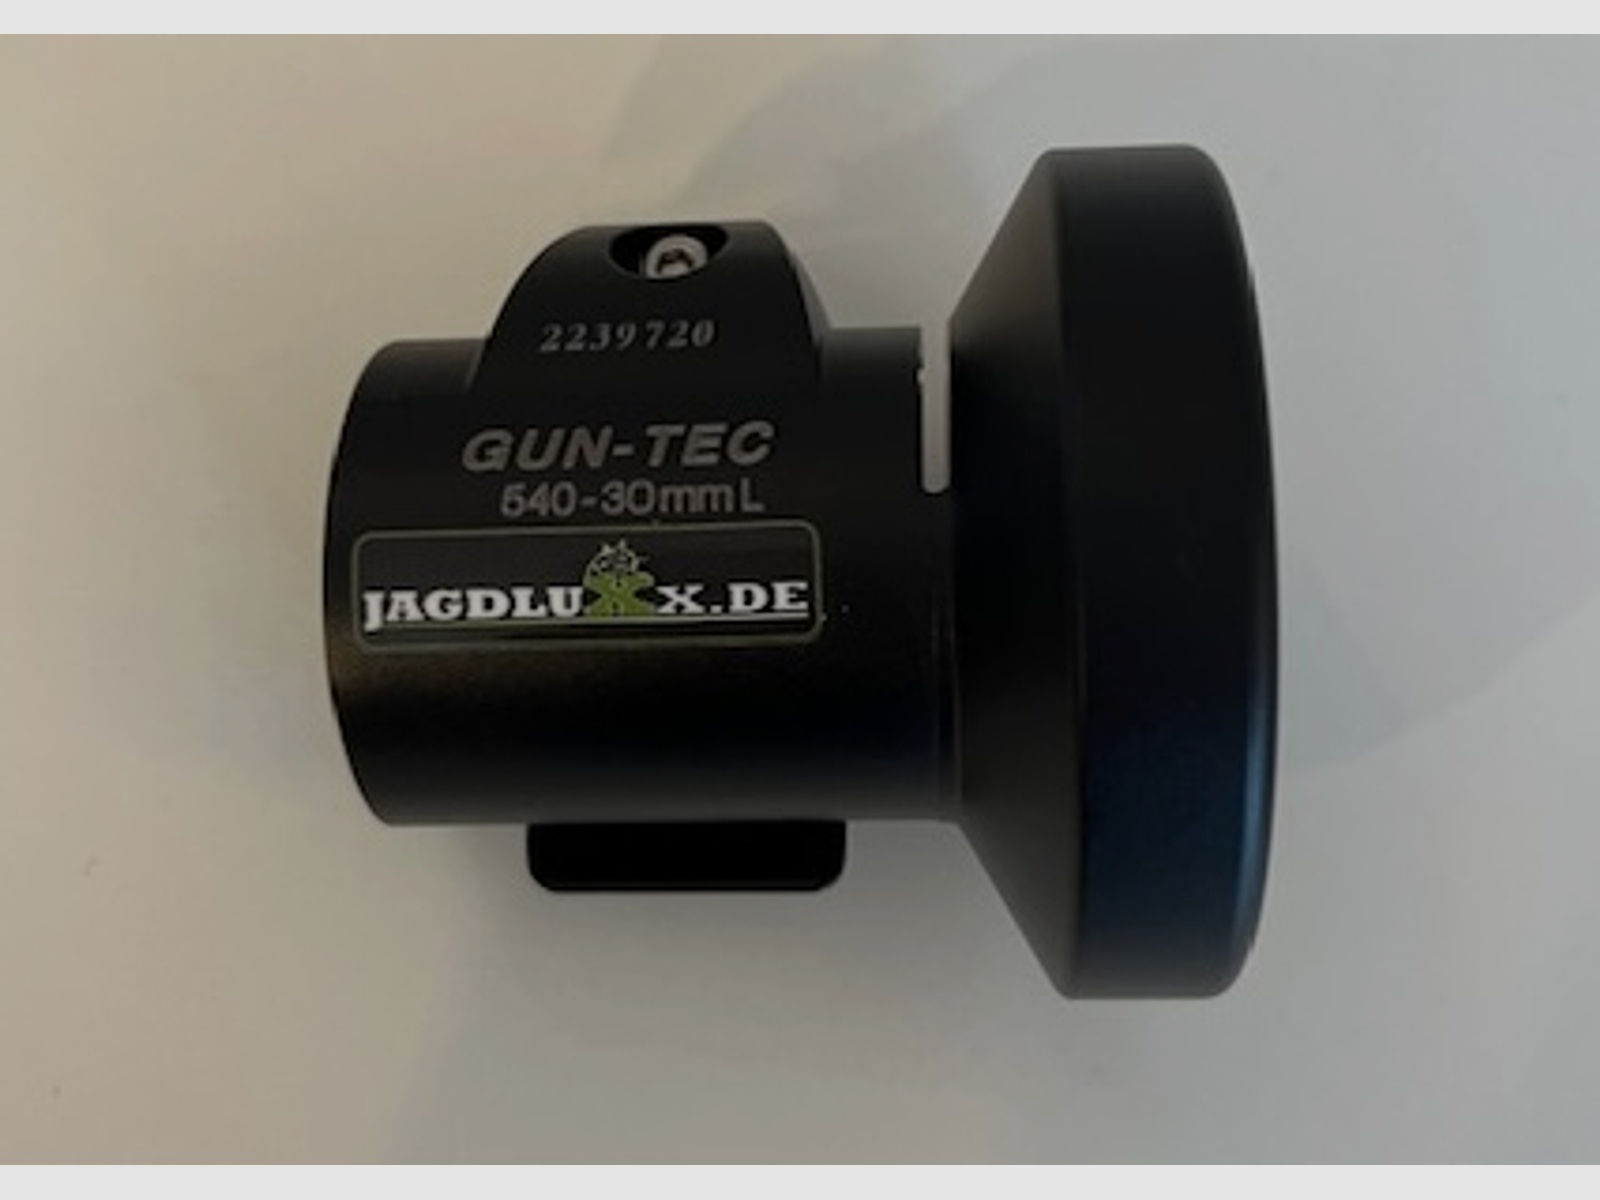 Smartclip Adapter / GunTec / AD 30mm / Wärmebildvorsatz Adapter